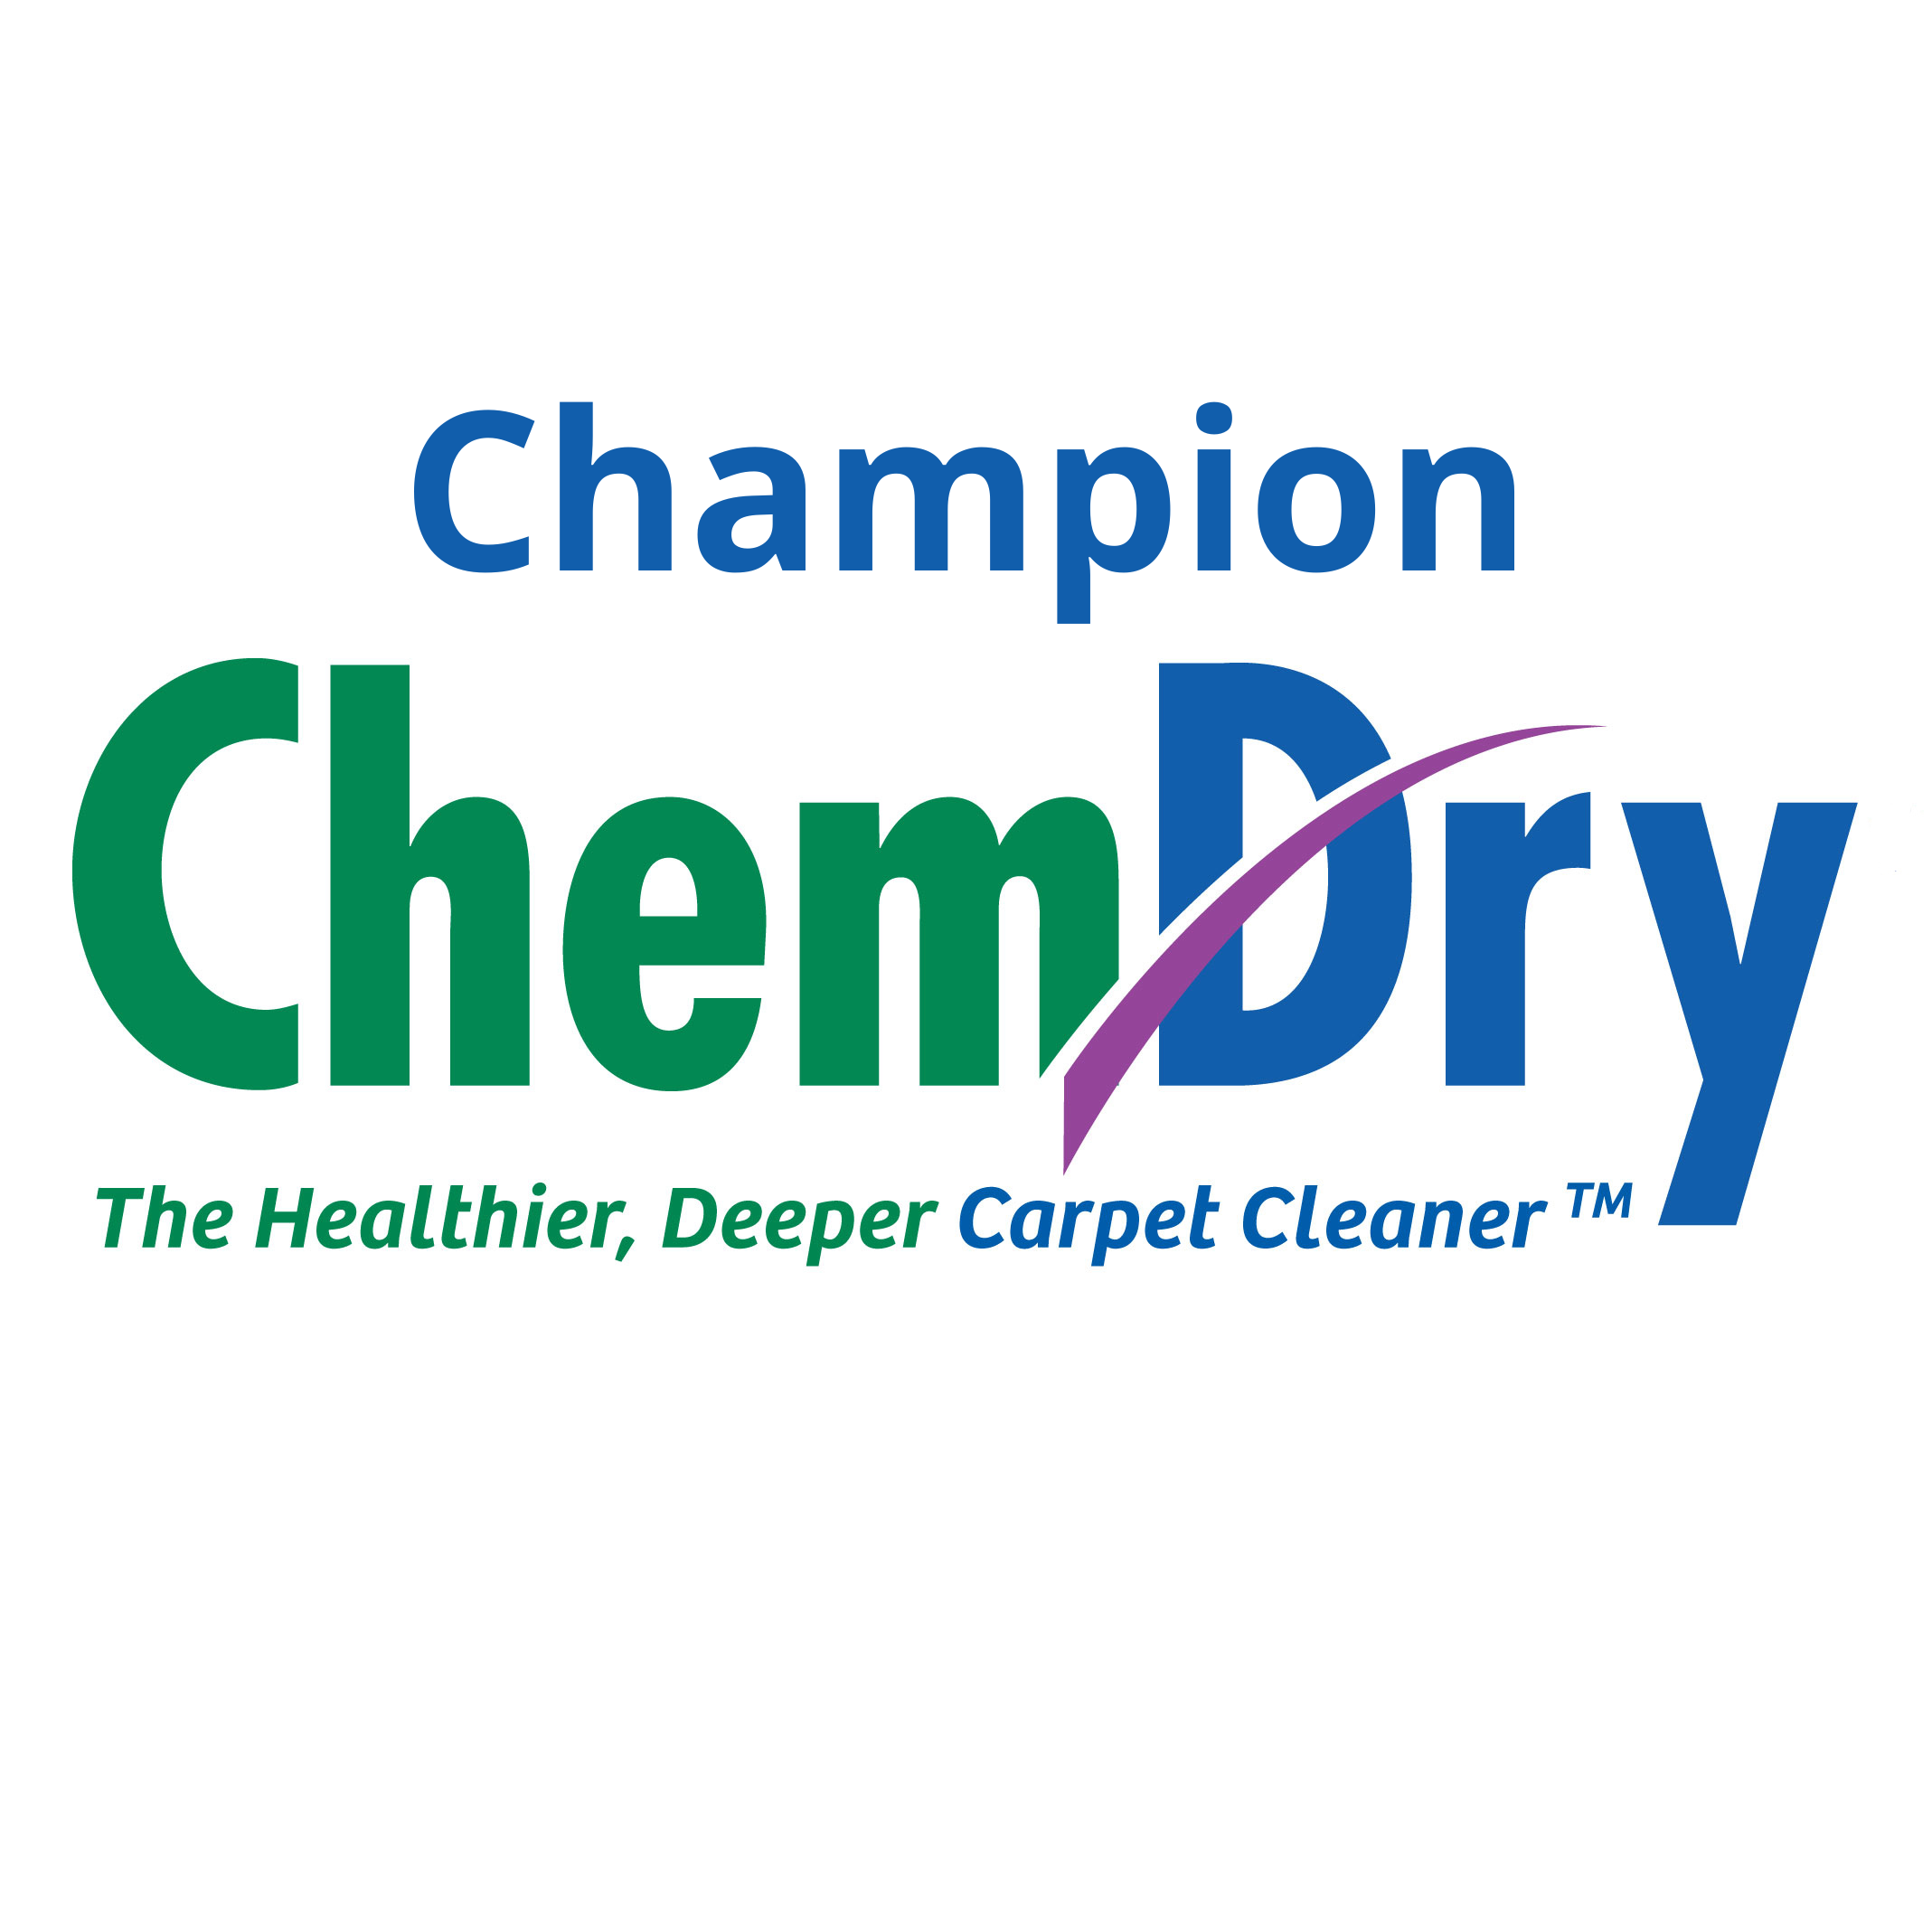 Champion Chem-Dry Idaho - Rexburg, ID - (208)529-2771 | ShowMeLocal.com